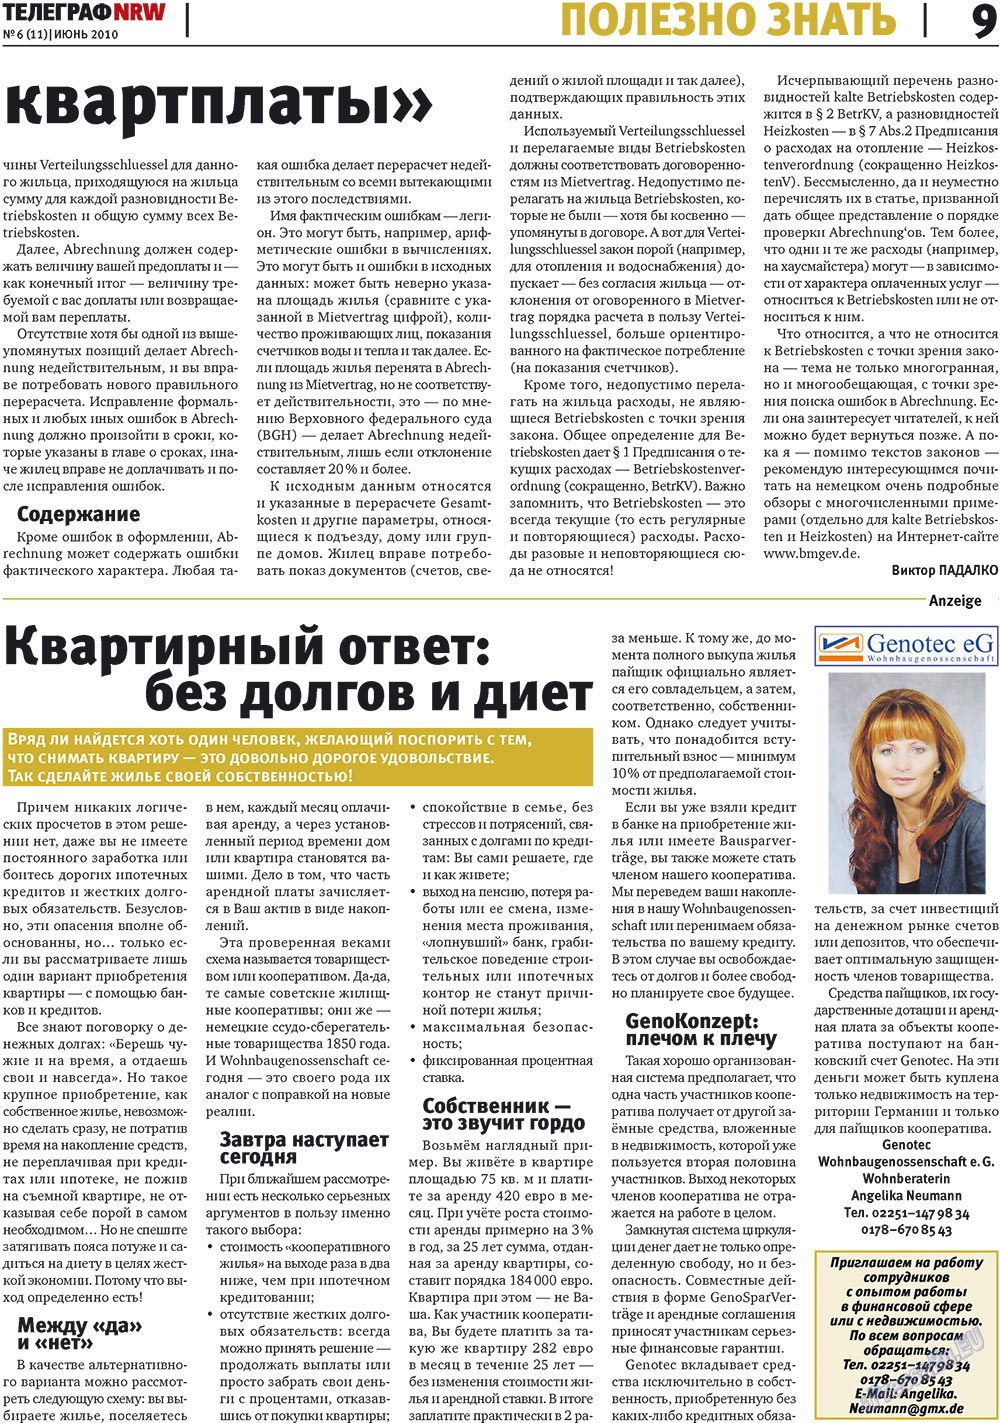 Телеграф NRW (газета). 2010 год, номер 6, стр. 9